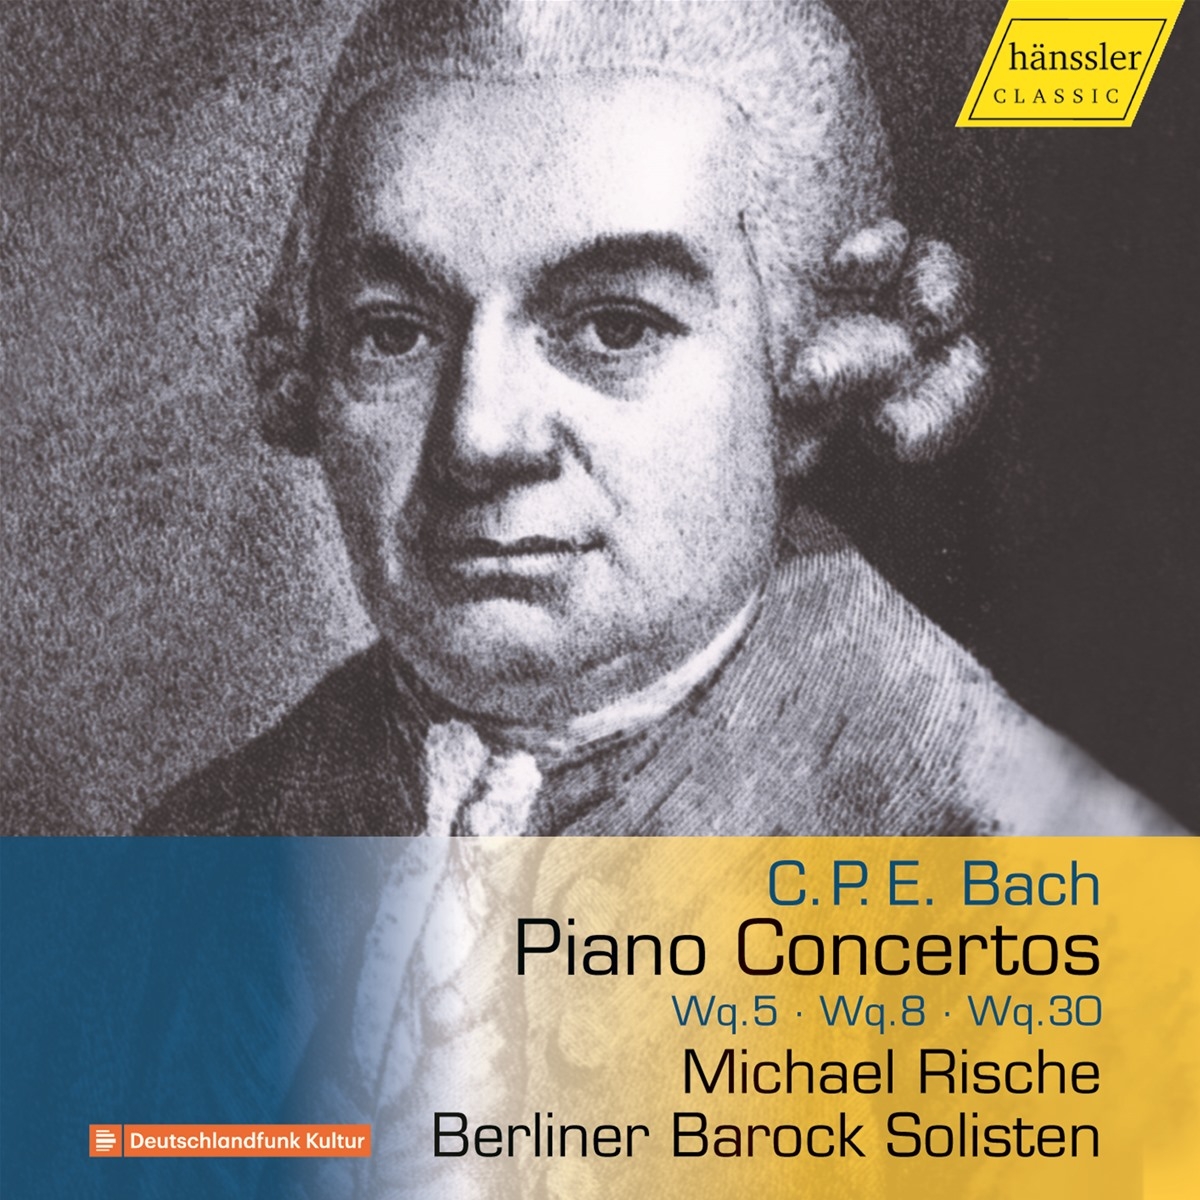 Piano Concertos Wq.5/Wq.8/Wq.30